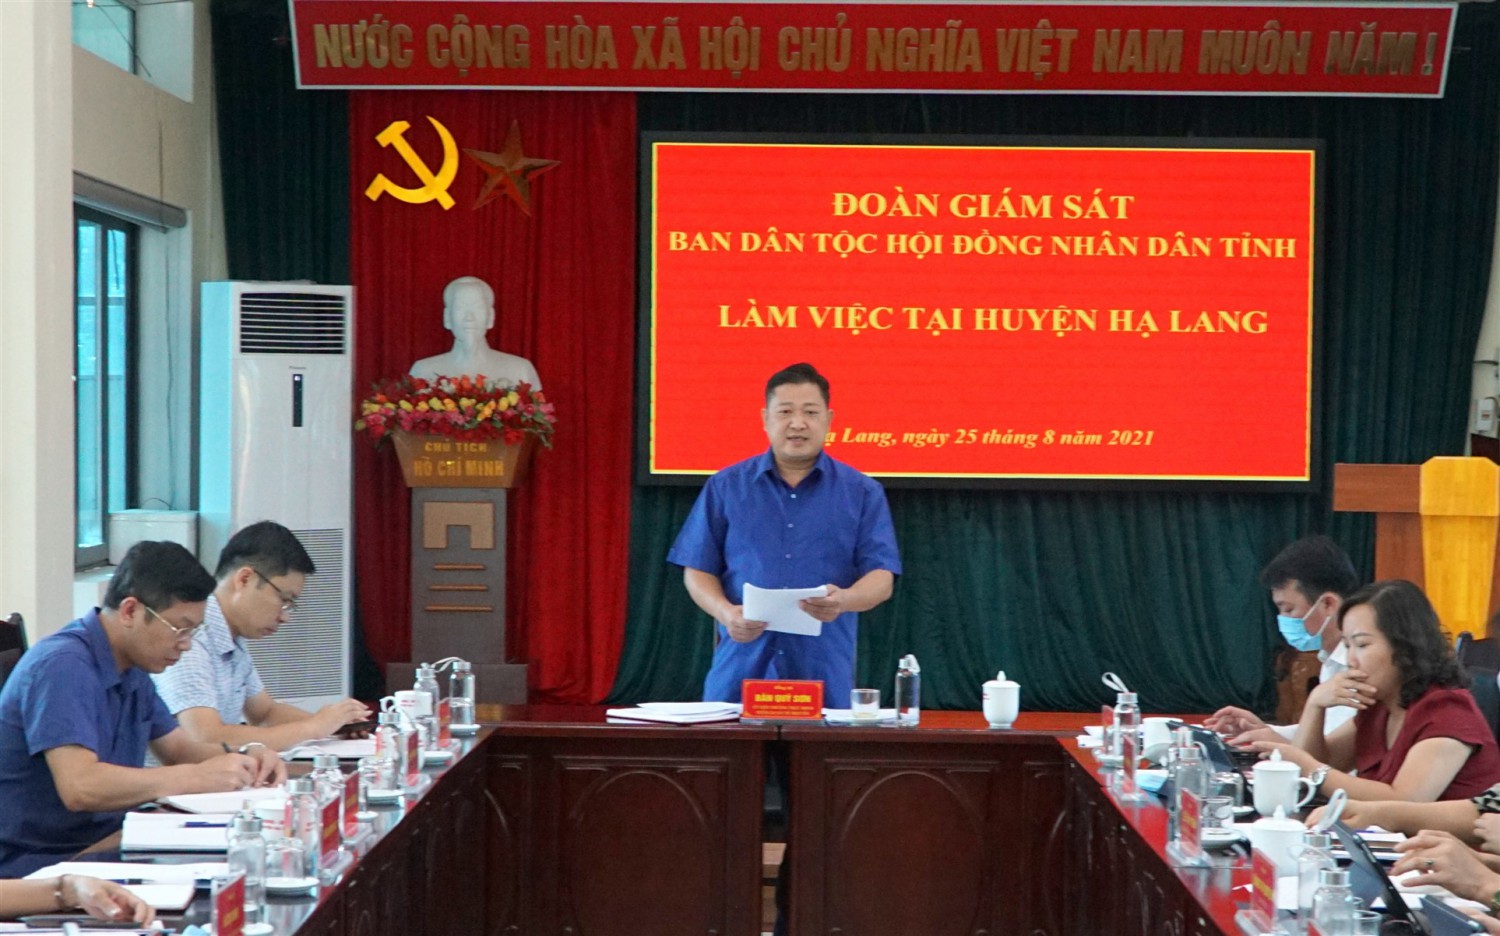 Đ/c Bàn Qúy Sơn - Trưởng đoàn giám sát phát biểu tại buổi làm việc